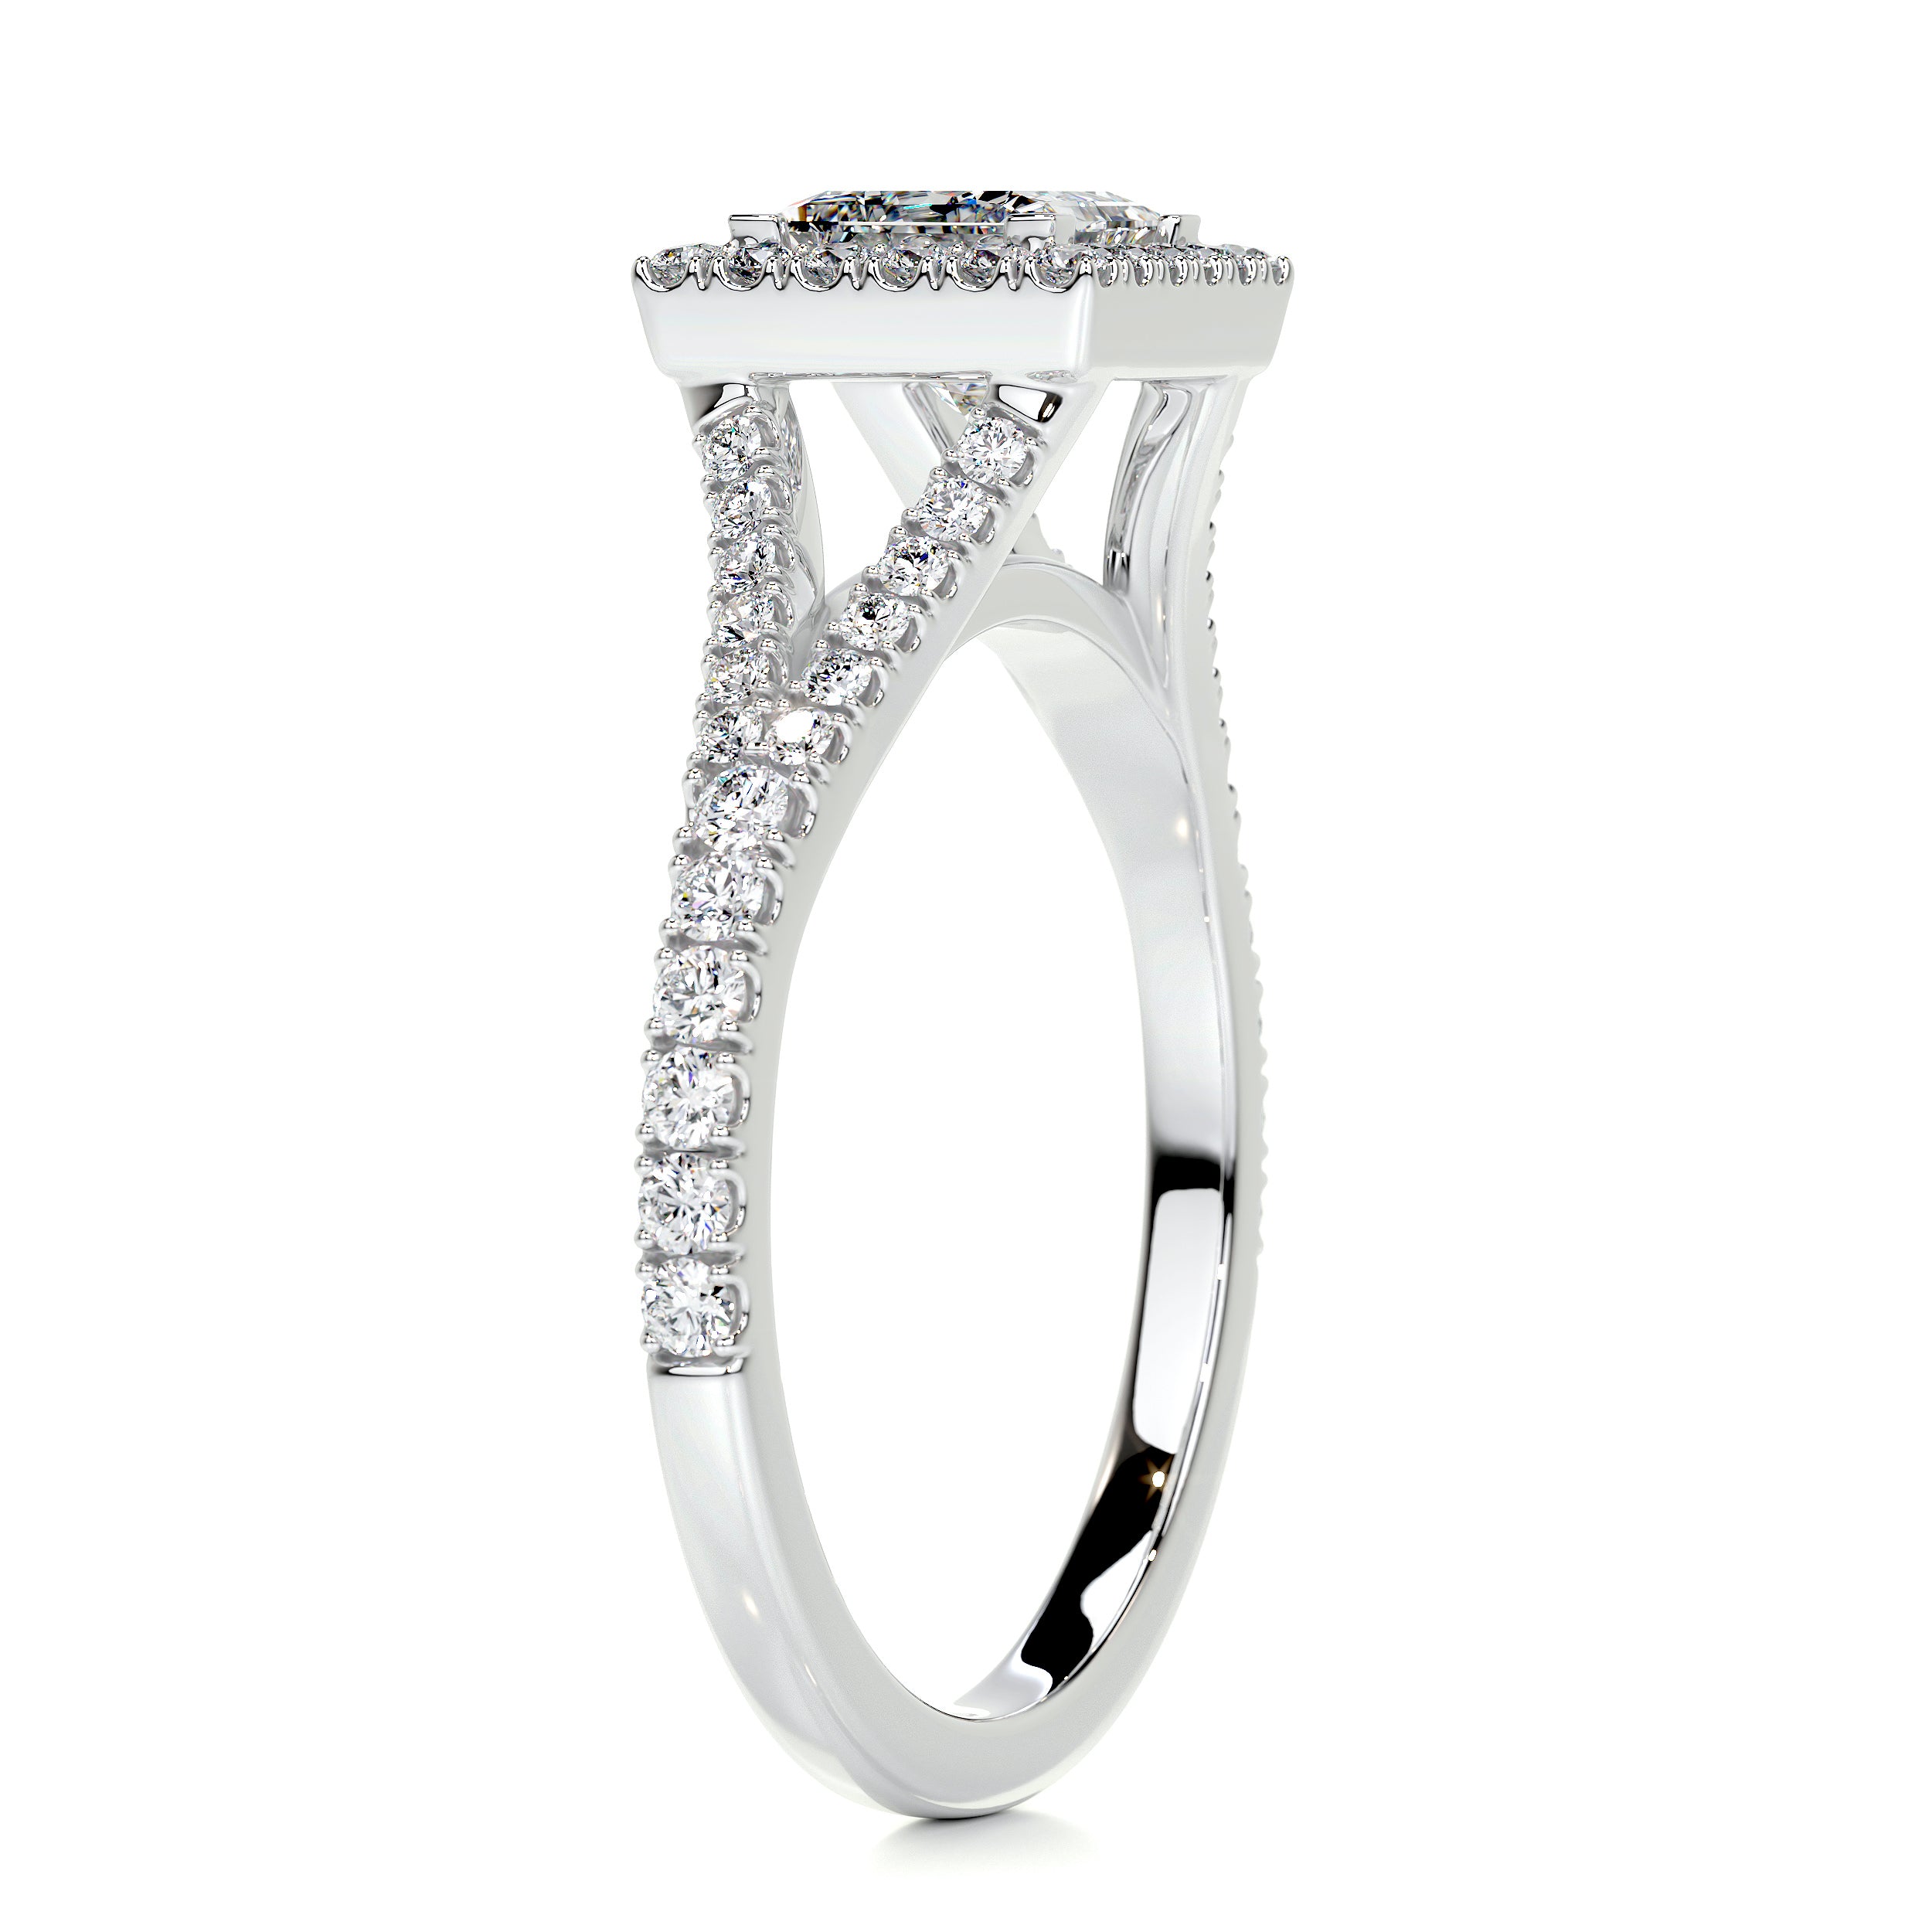 Celia Diamond Engagement Ring   (1.25 Carat) -Platinum